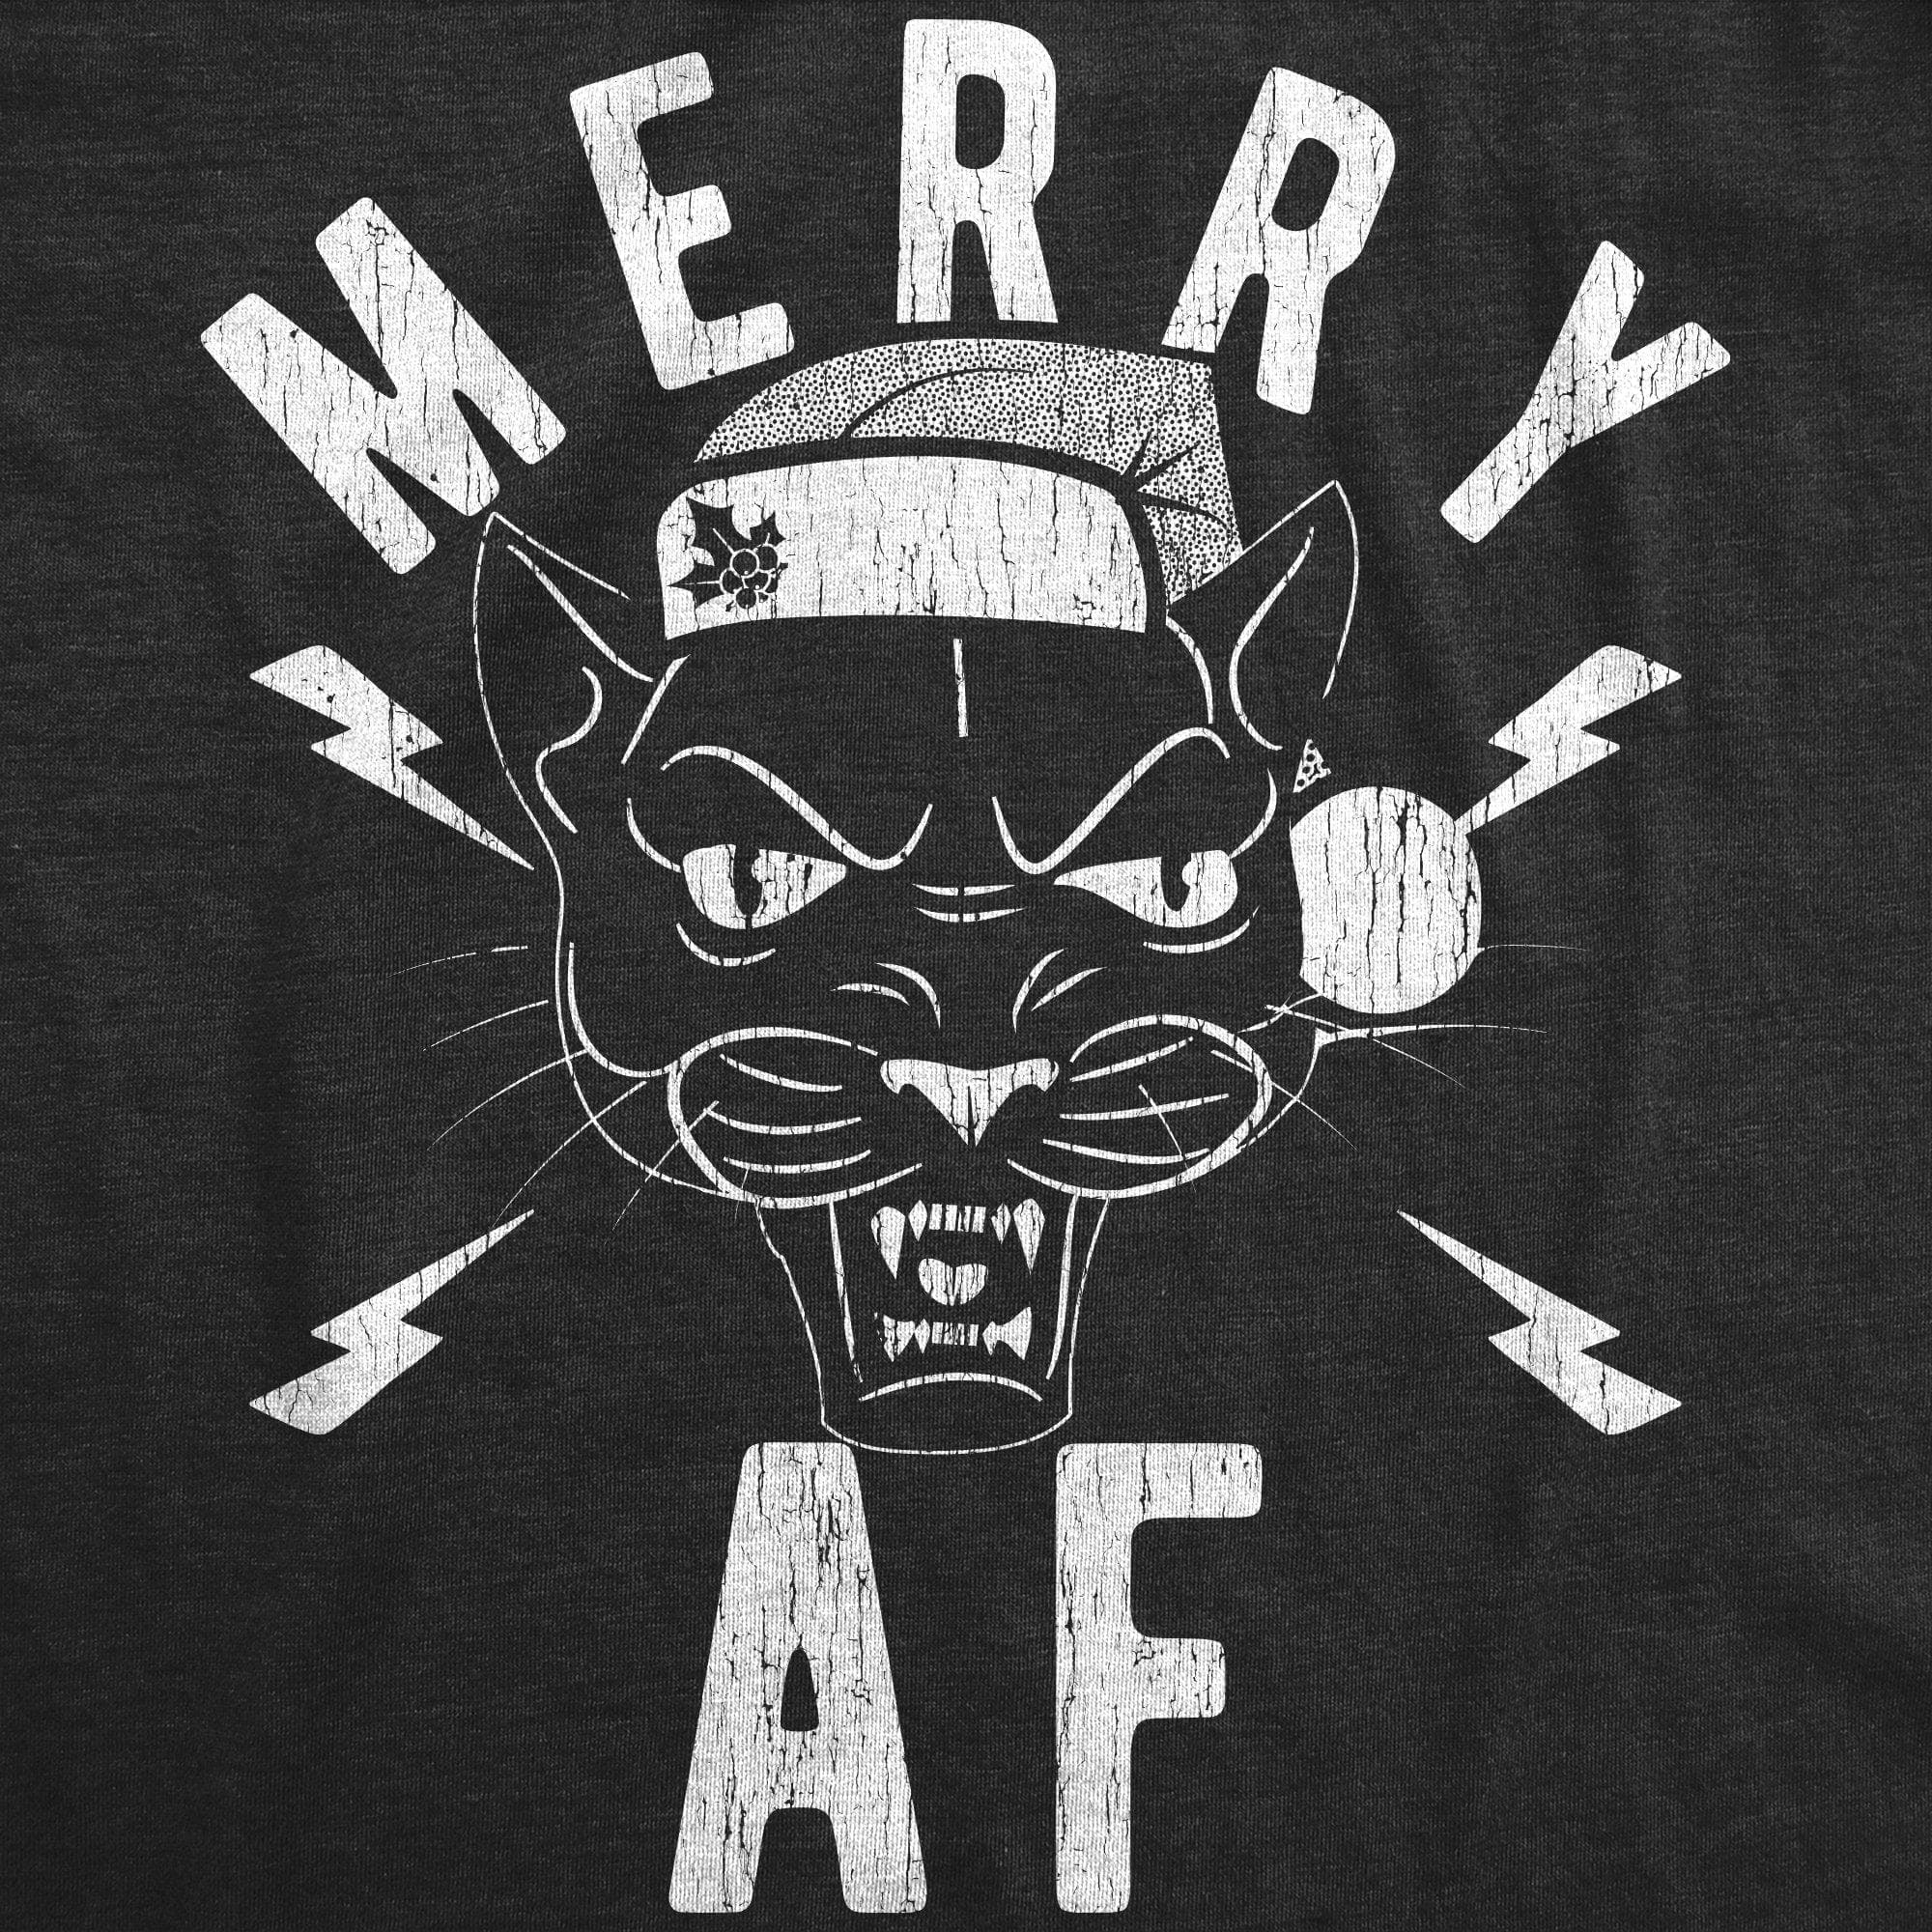 Merry AF Men's Tshirt - Crazy Dog T-Shirts